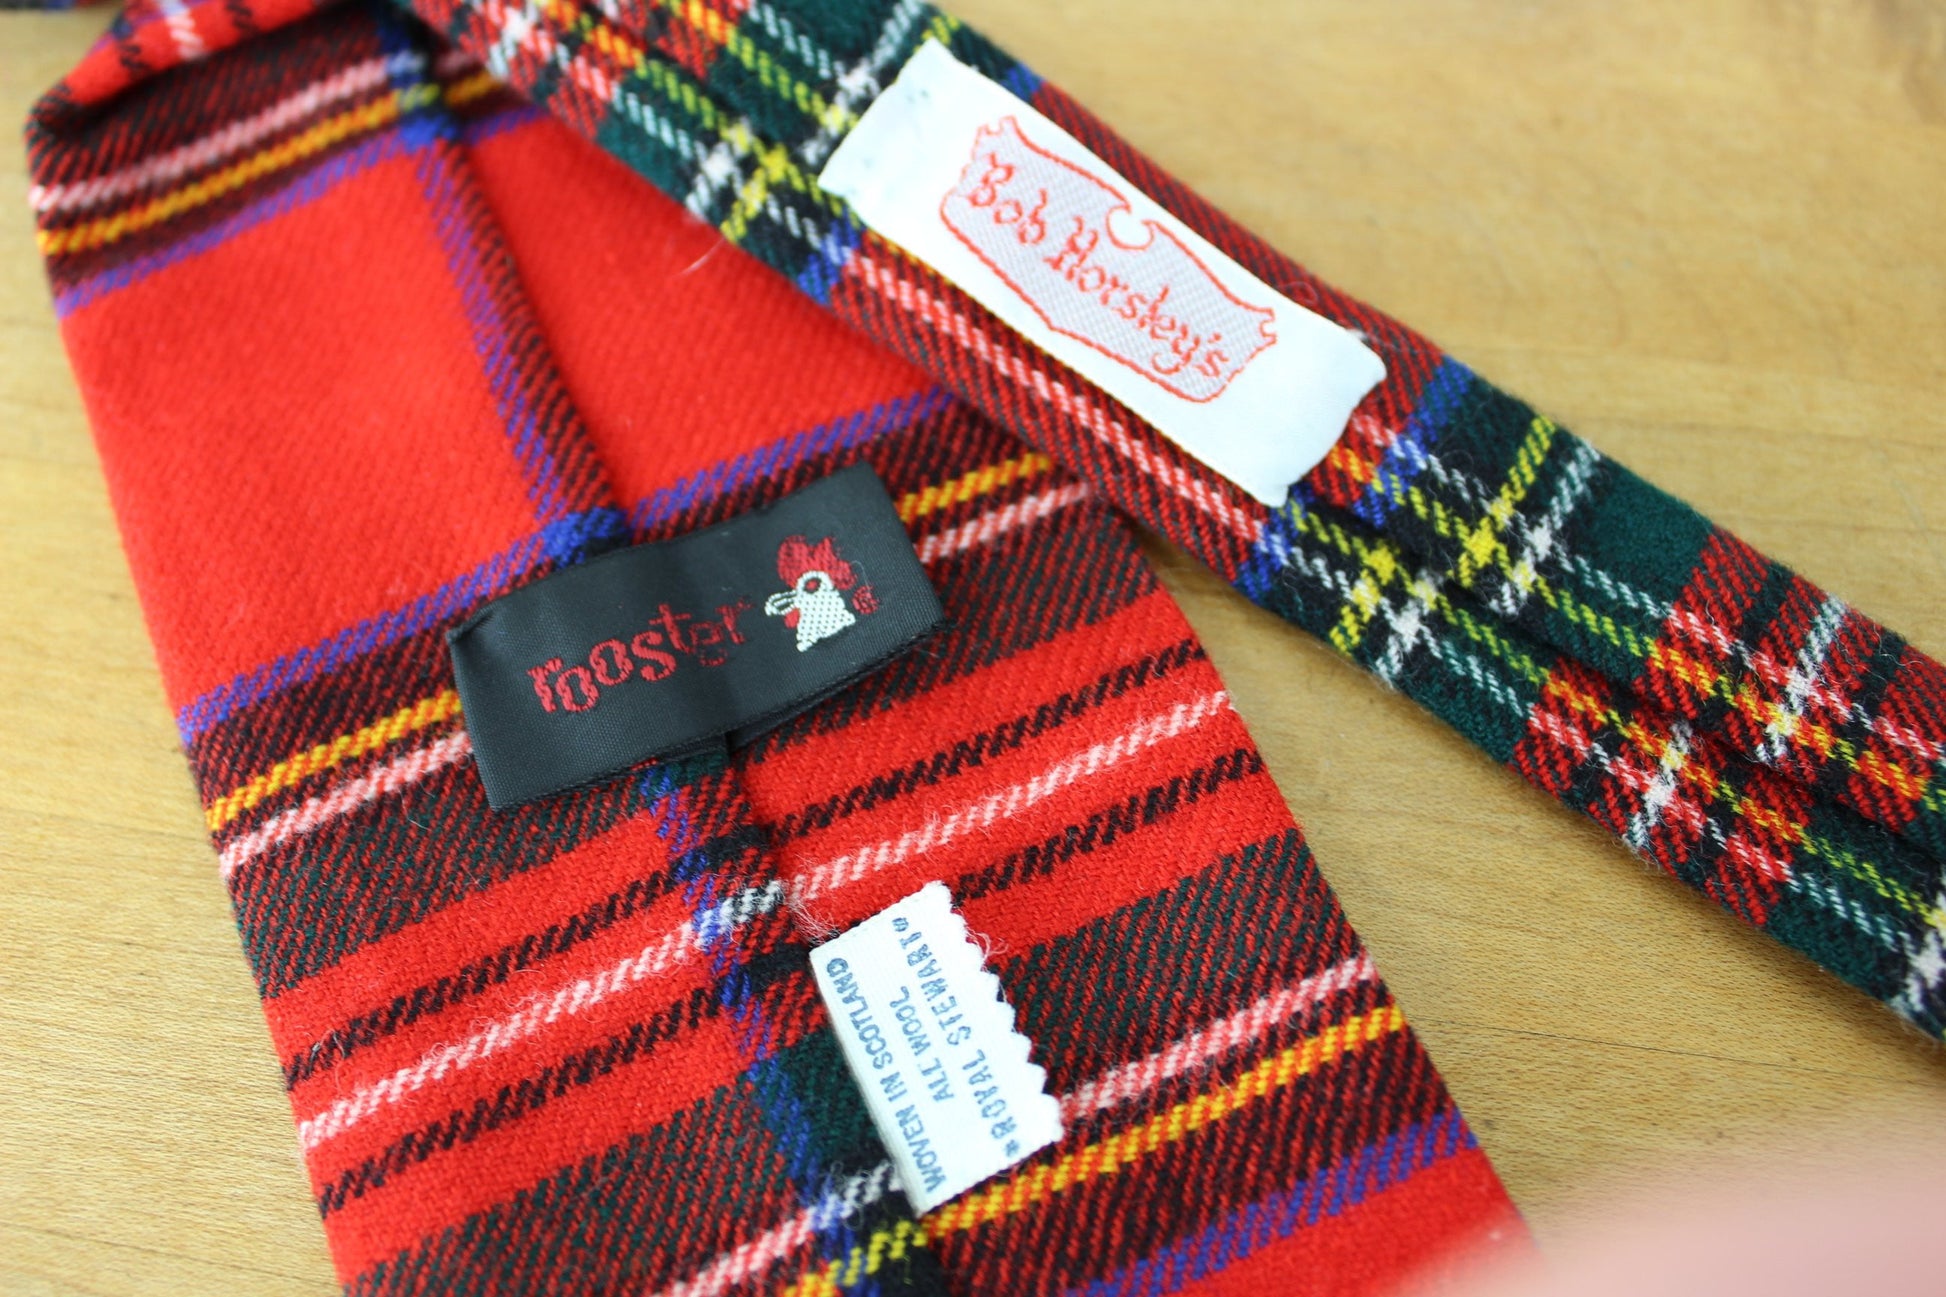 Rooster Vintage Wool Necktie - Rare Royal Stewart Tartan Scotland - 54" X 3" excellent vintage tie